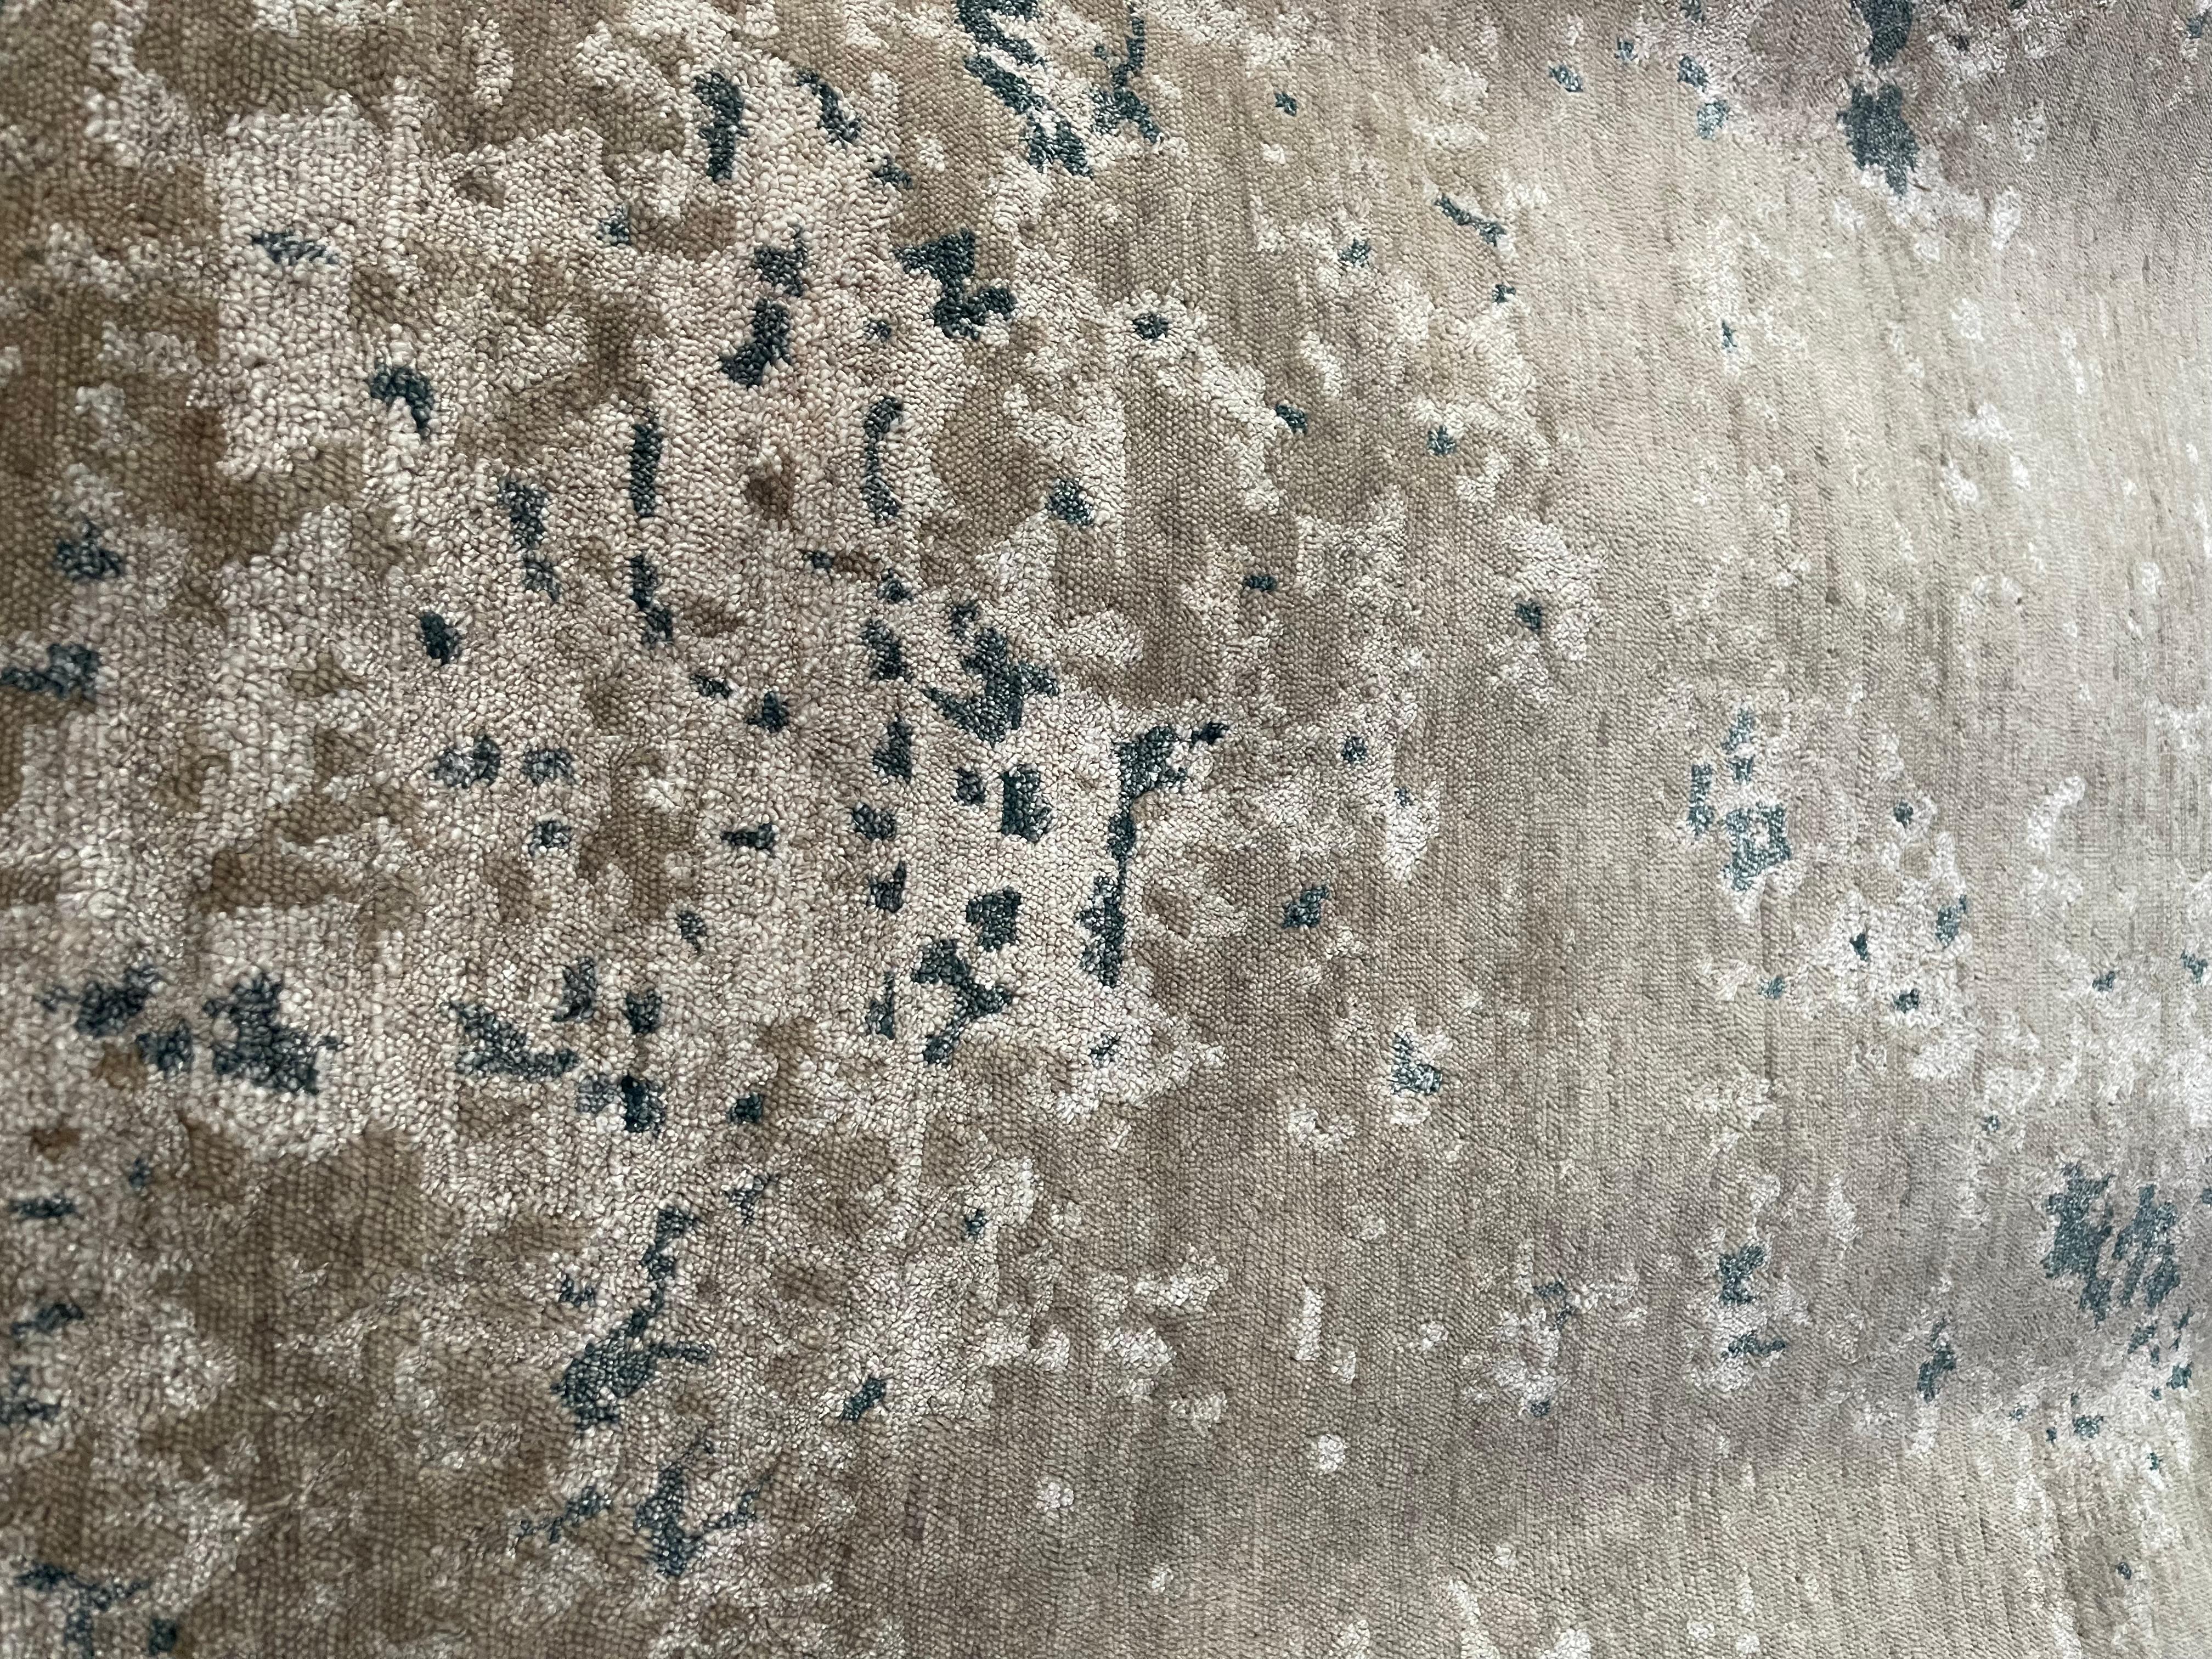 Dieser Teppich ist aus unserer Master-Loom Kollektion. Das Format ist 170cm x 240cm, handgeknüpft und besteht aus einer einzigartigen Mischung aus hochwertiger Wolle und Bambus-Seide, deren natürlicher Glanz moderne Farbtöne in silbergrau, beige,